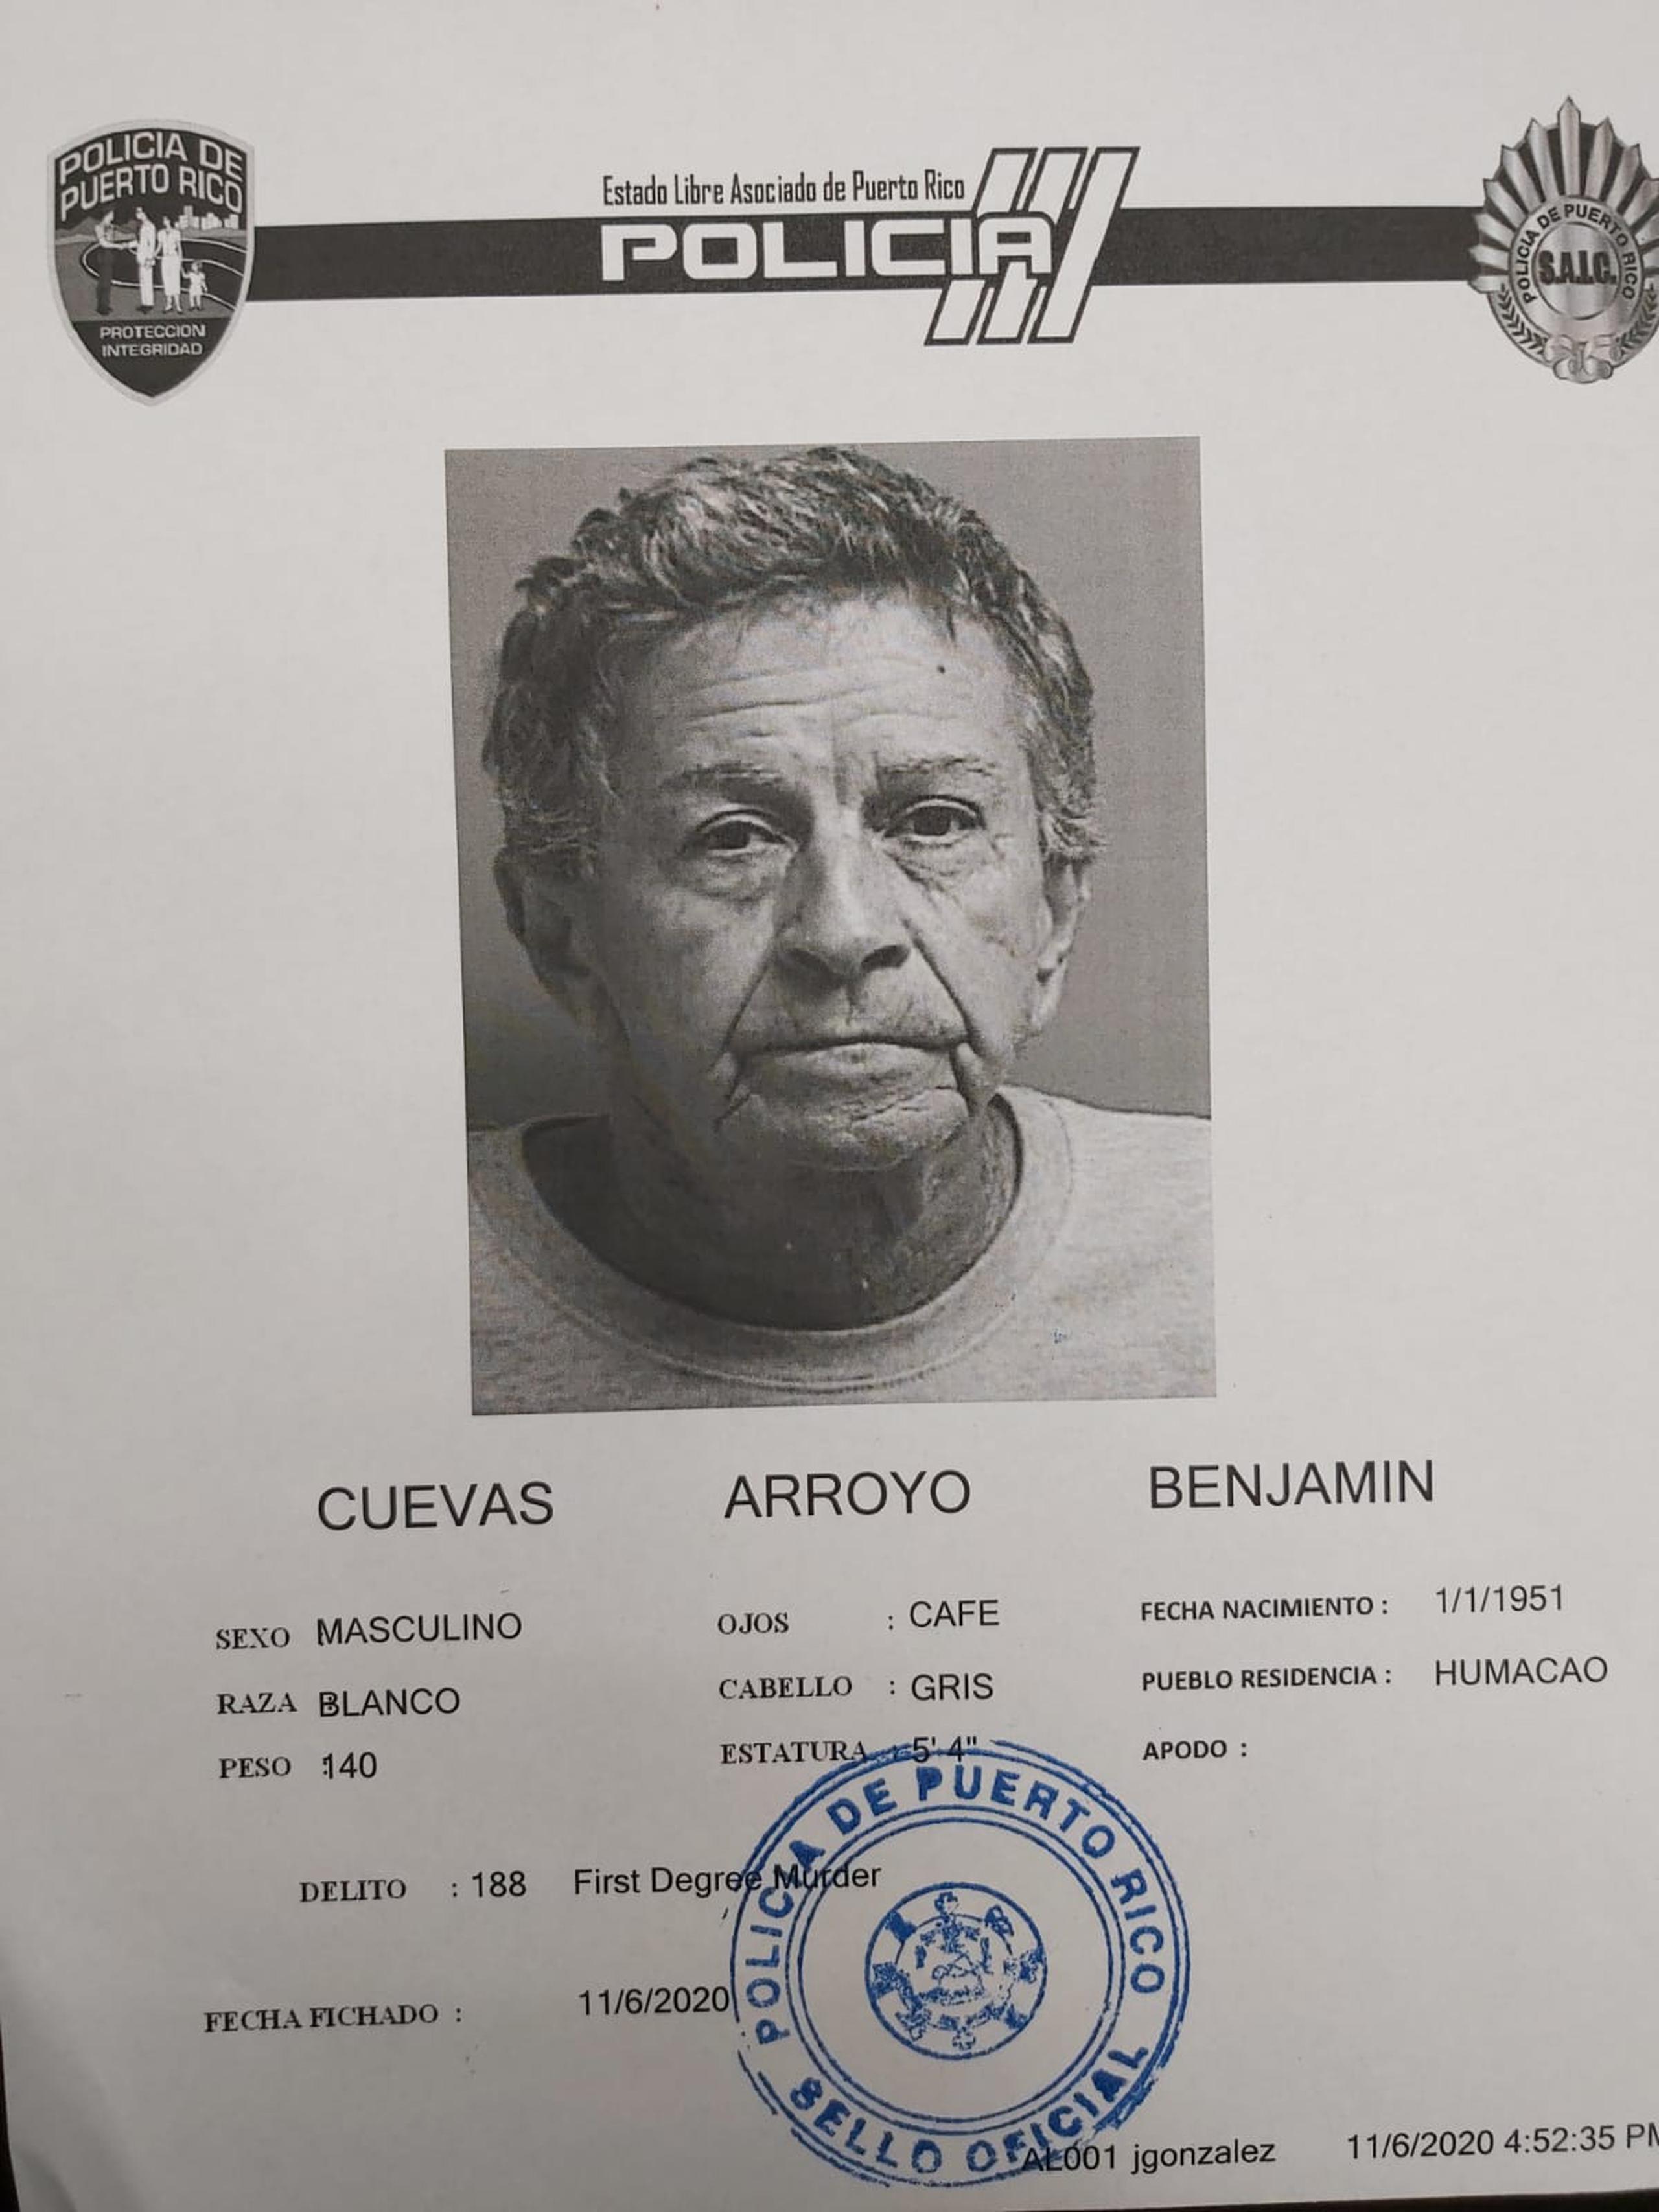 La jueza María Rojas, del Tribunal de Caguas, determinó causa para arresto contra Benjamín Cuevas Arroyo, de 69 años, por asesinato en primer grado y violación a la Ley de Armas, por el crimen a puñaladas de su pareja.